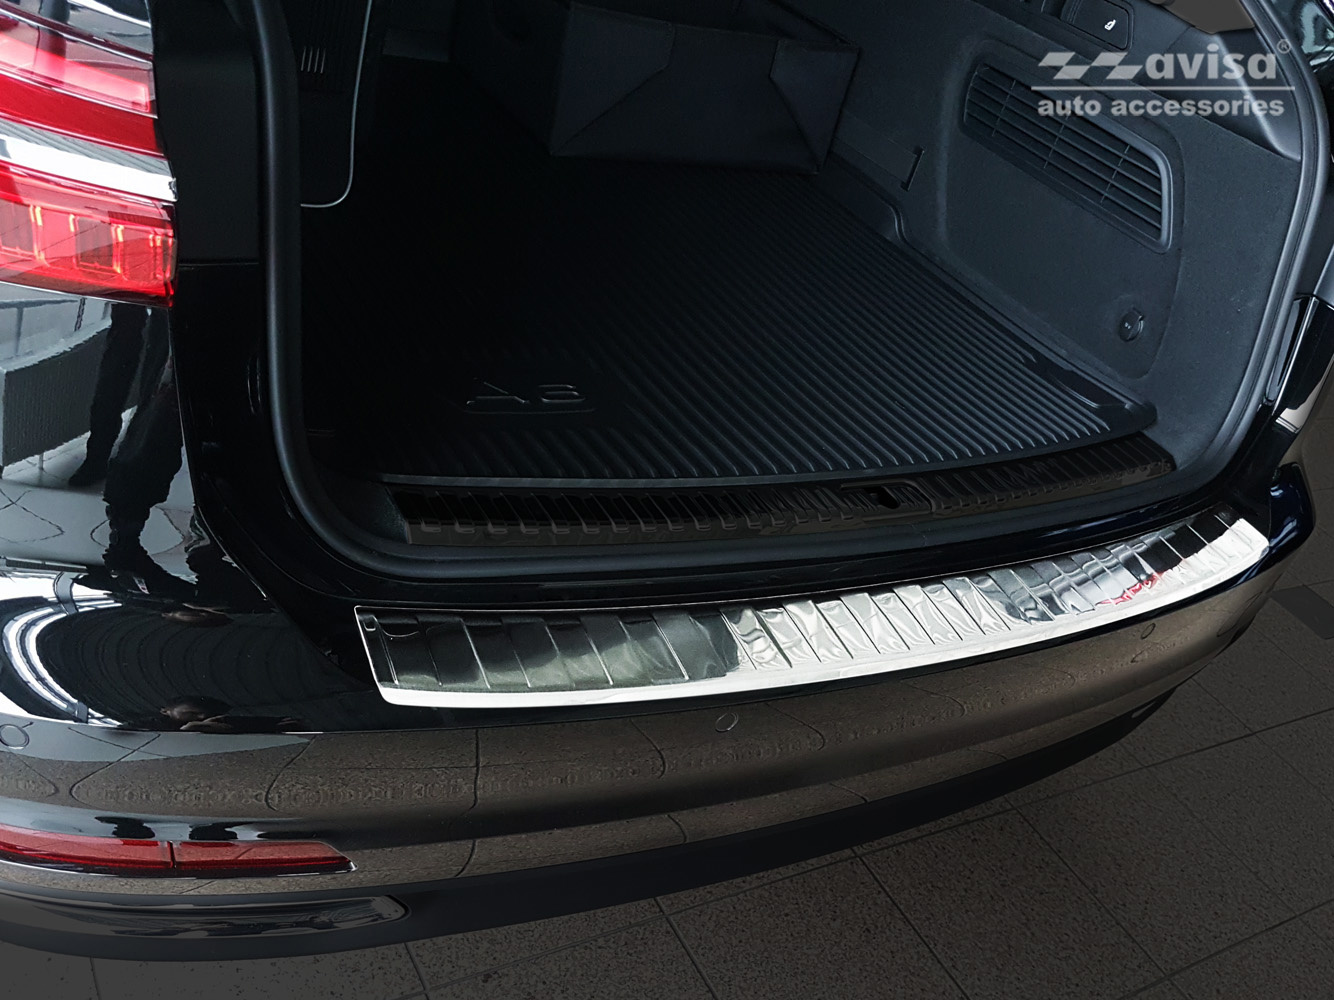 Ladekantenschutz für Audi A6 C8 Avant - Maluch Premium Autozubehör